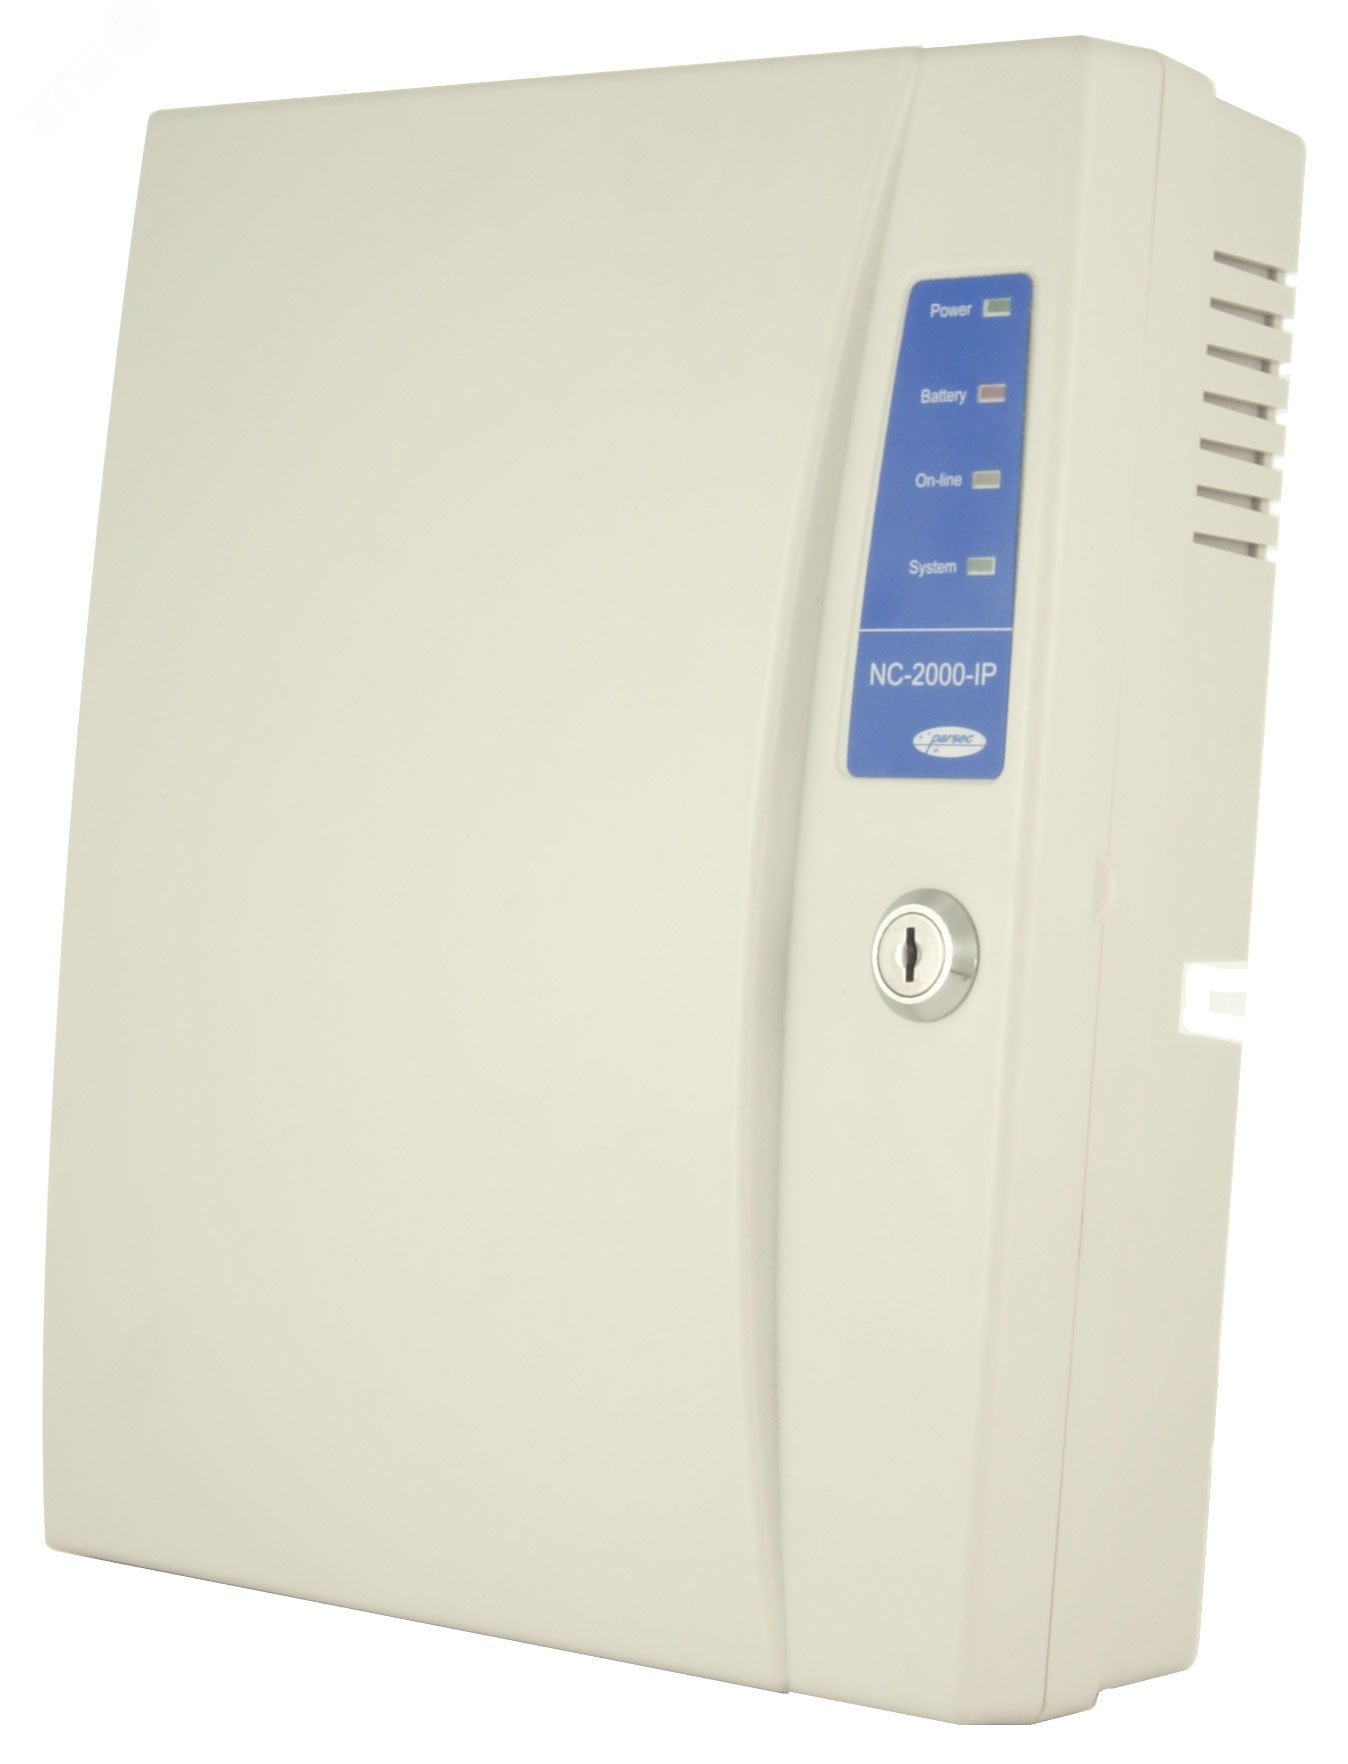 Сетевой контроллер NC-2000-IP(База на 2000        пользователей, Ethernet, охранная сигнализация) Контроллер NC-2000-IP Аргус-Спектр - превью